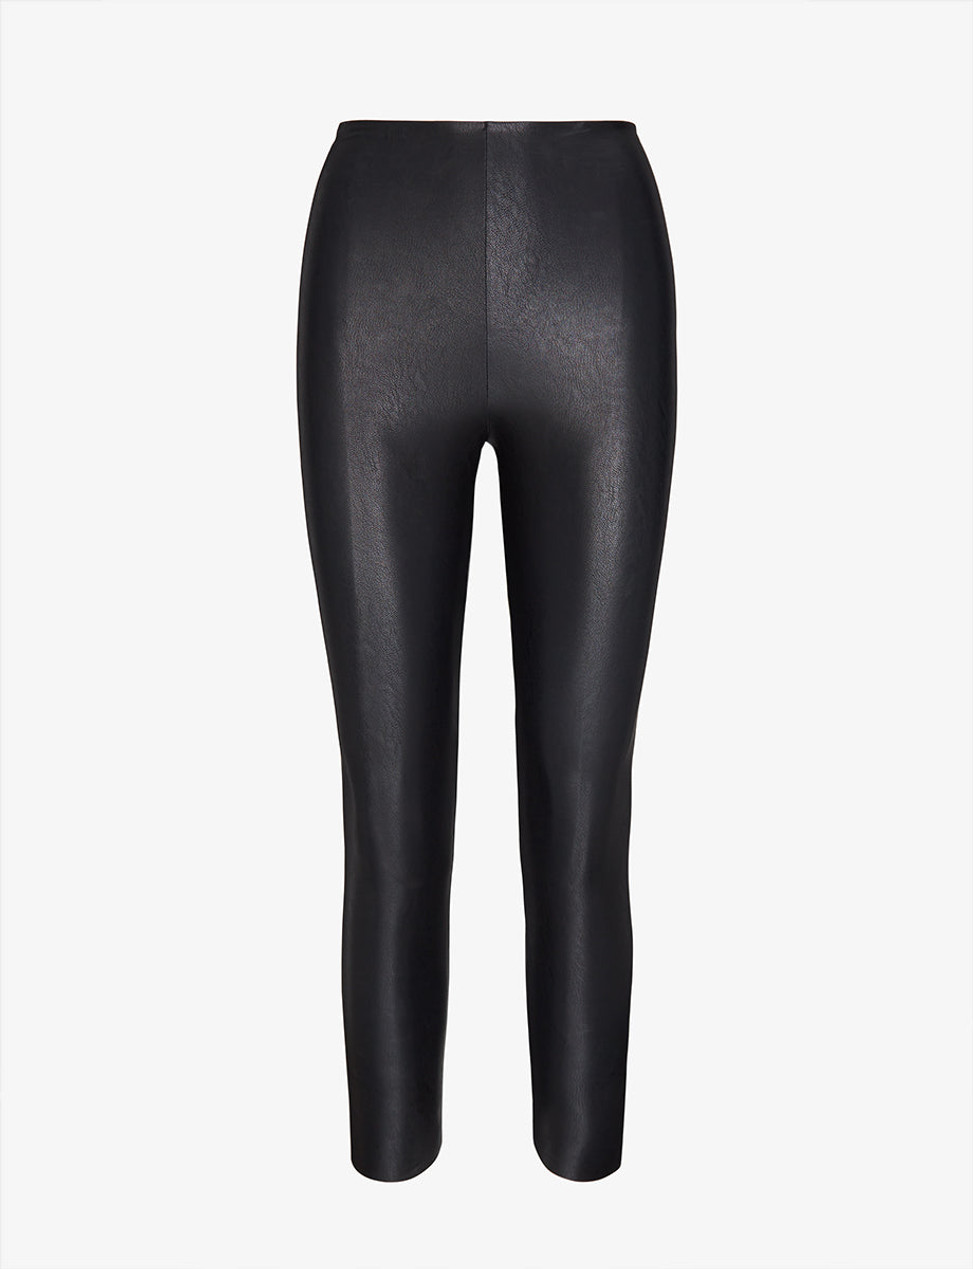 Commando faux patent perfect control leggings in black | ASOS